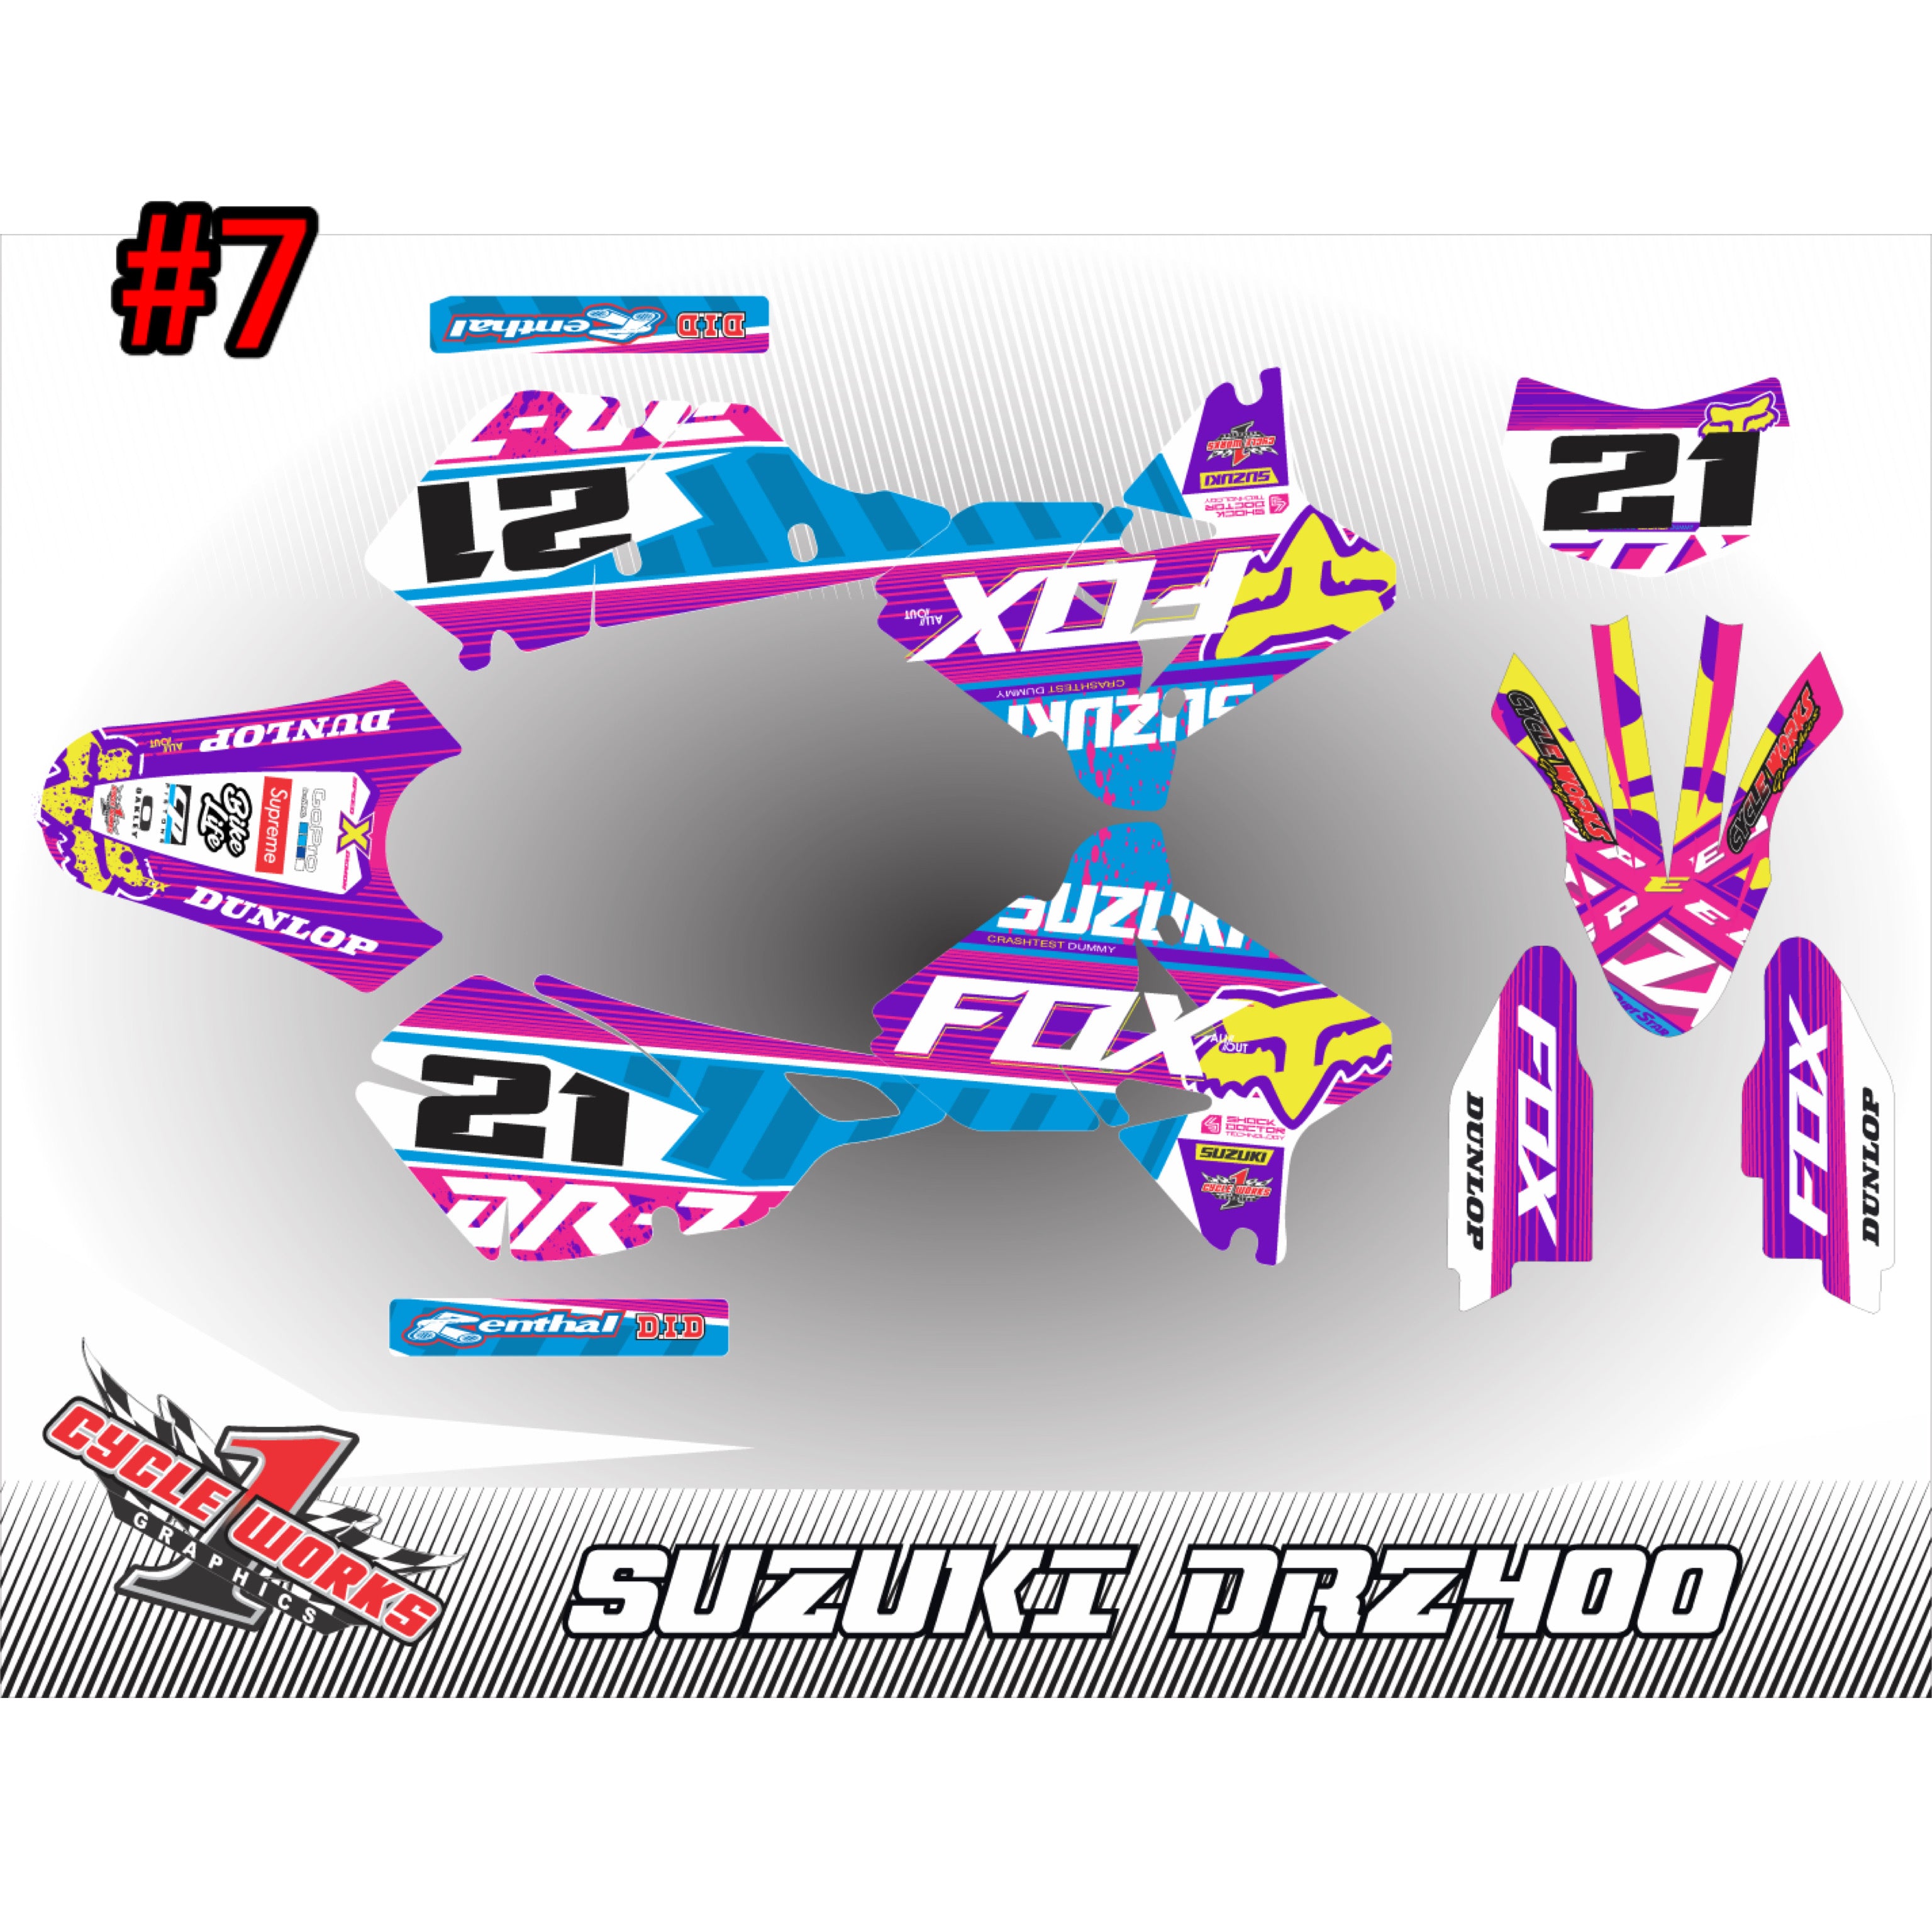 Drz400 full graphic kit fox & yoshimura